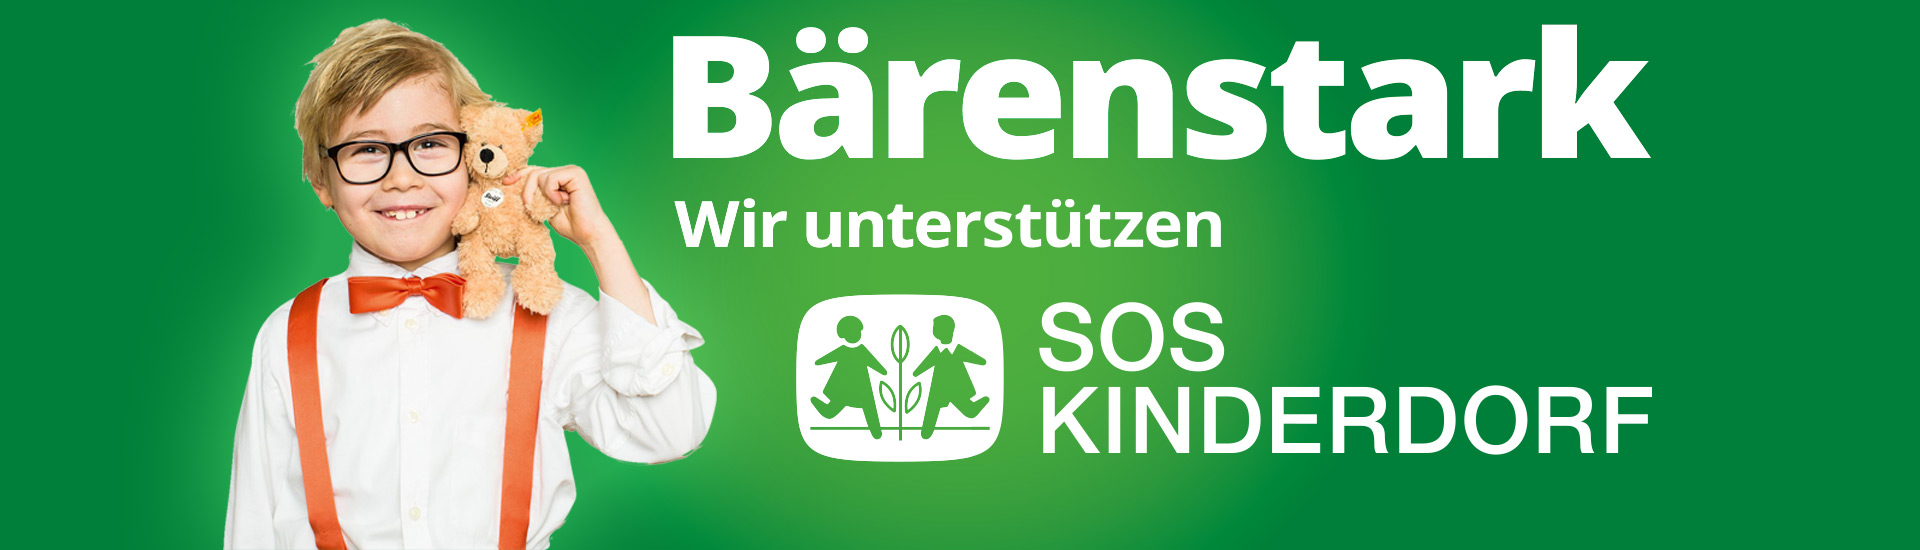 Nachrichten Möbel Schulze - Wir unterstützen SOS Kinderdorf